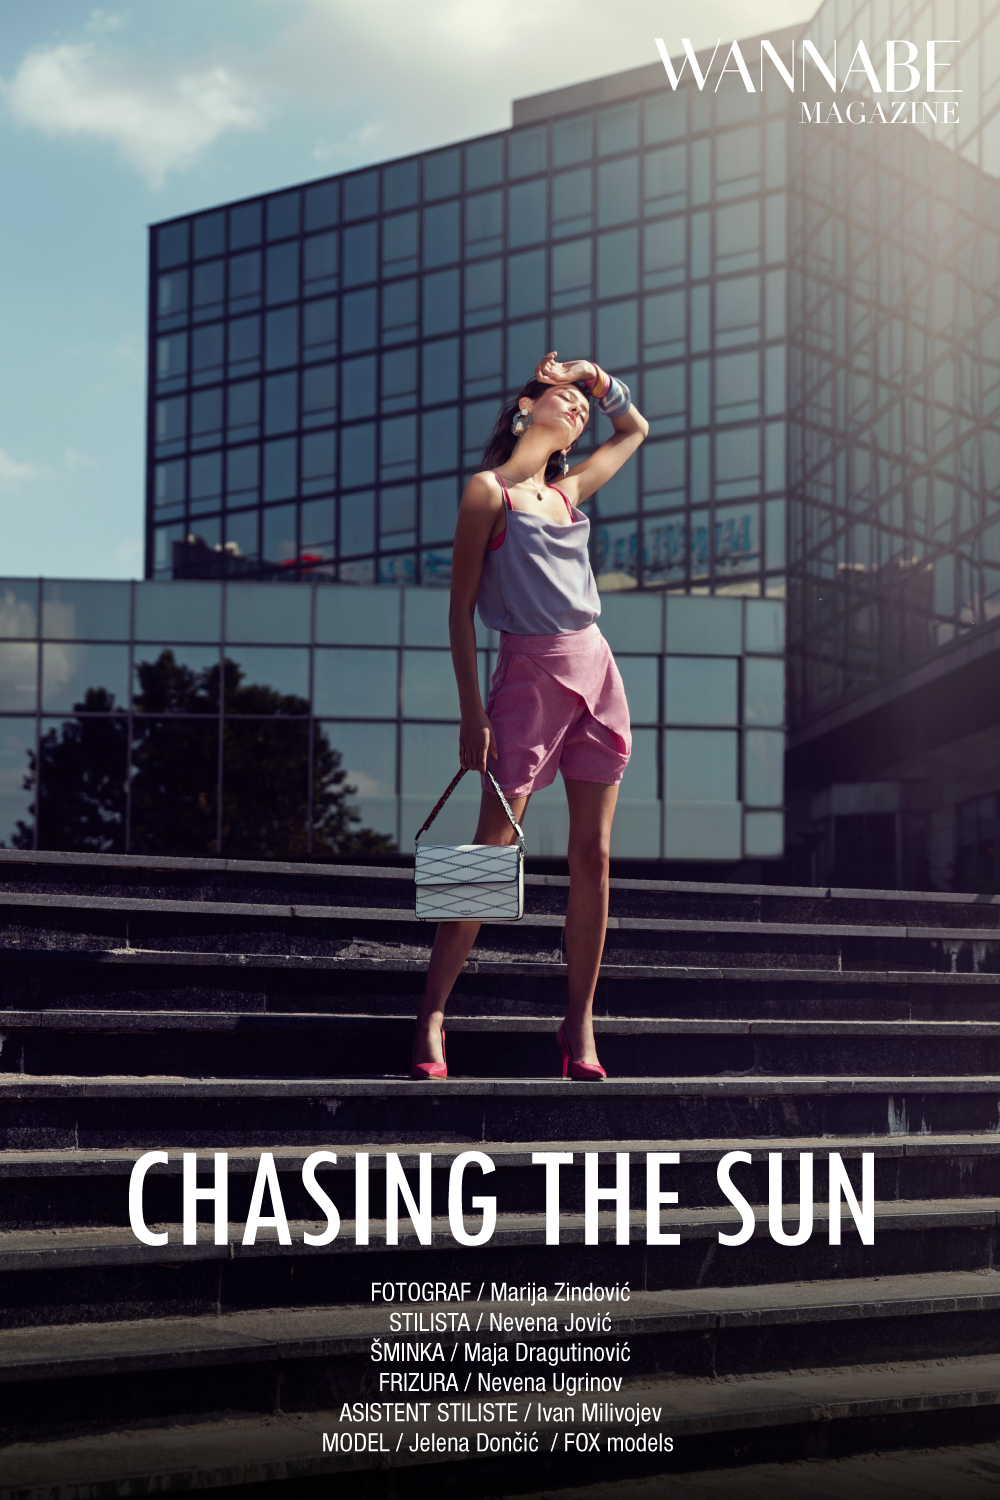 00 NASLOVNA Chasing the Sun 01 WANNABE EDITORIJAL: Chasing The Sun